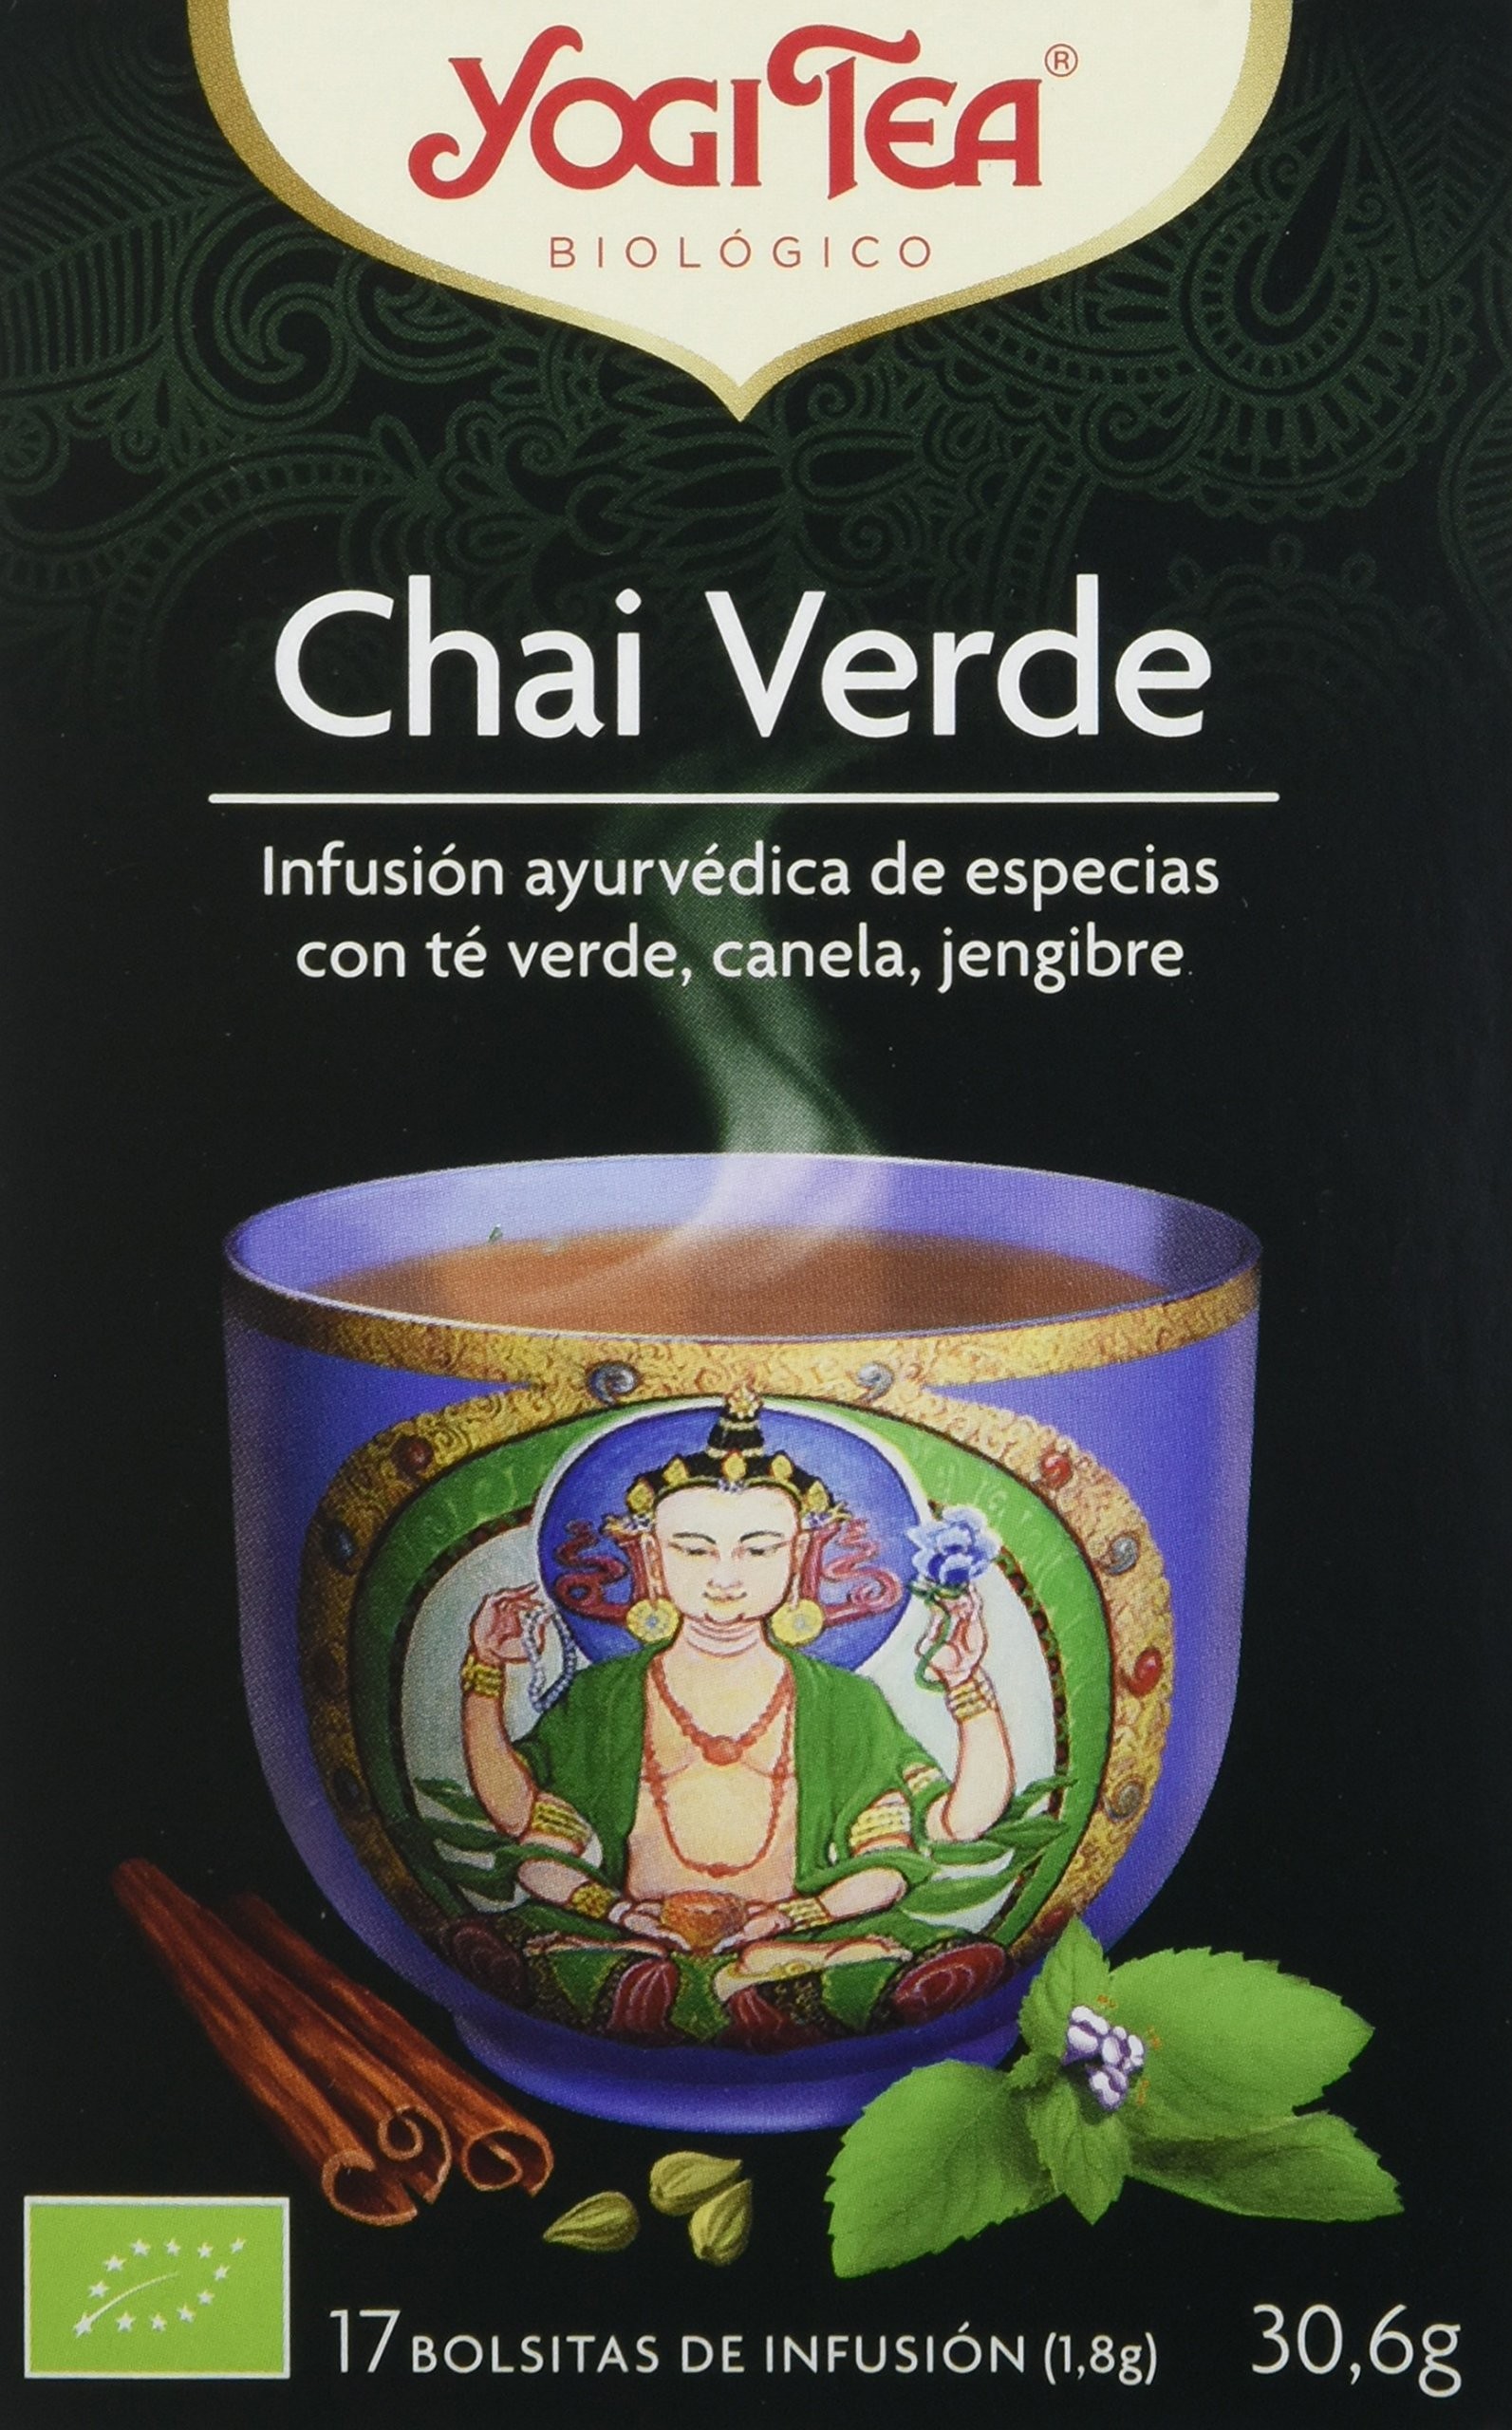 Yogi Tea - Defensas Naturales de Yogi tea, 17 bolsitas de 2 gramos